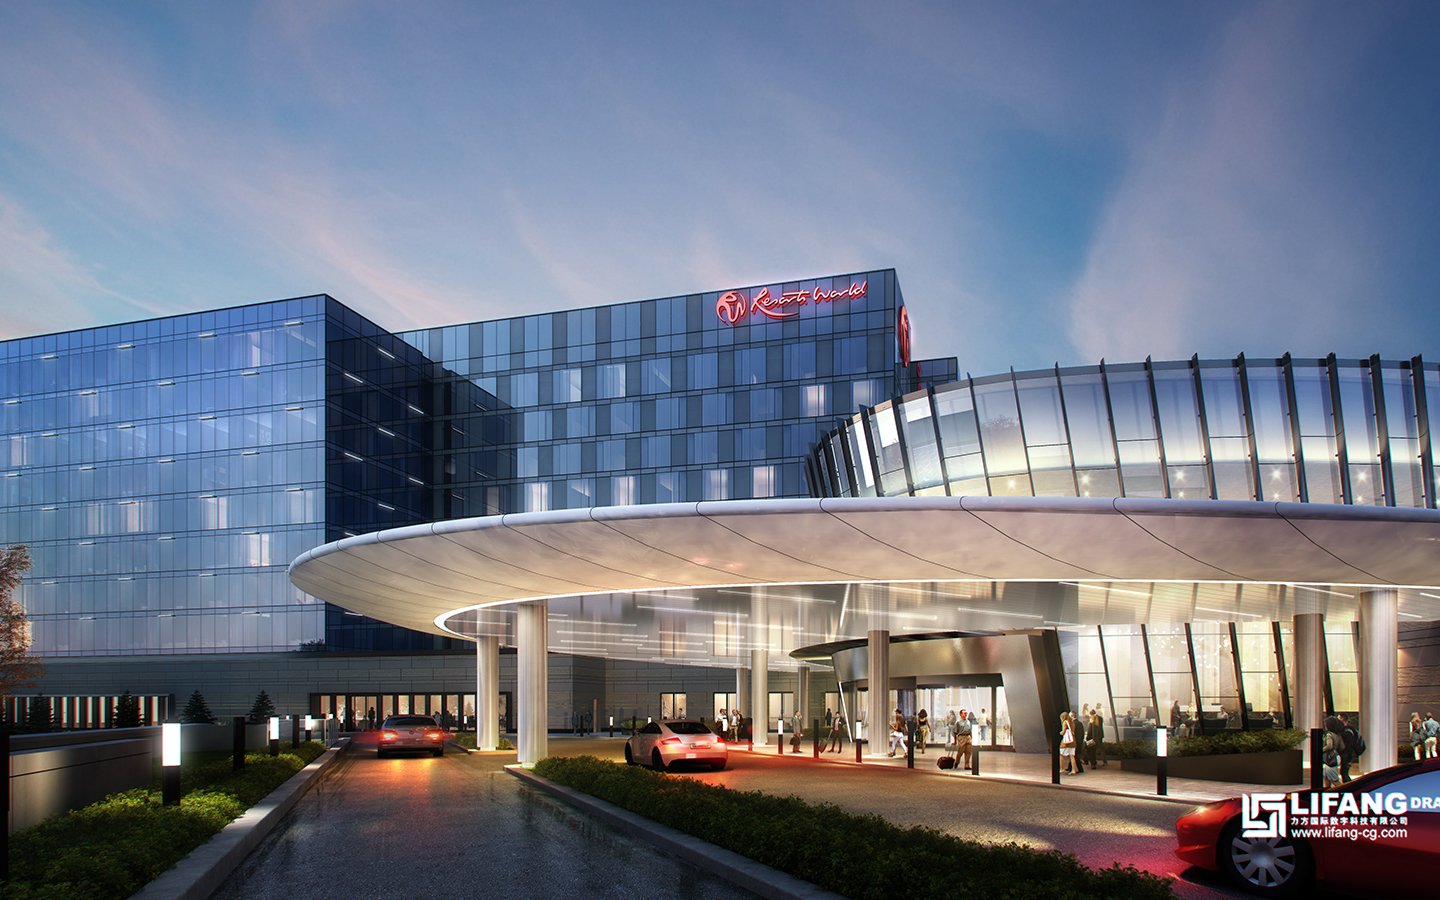 Resorts World Casino and Hotel